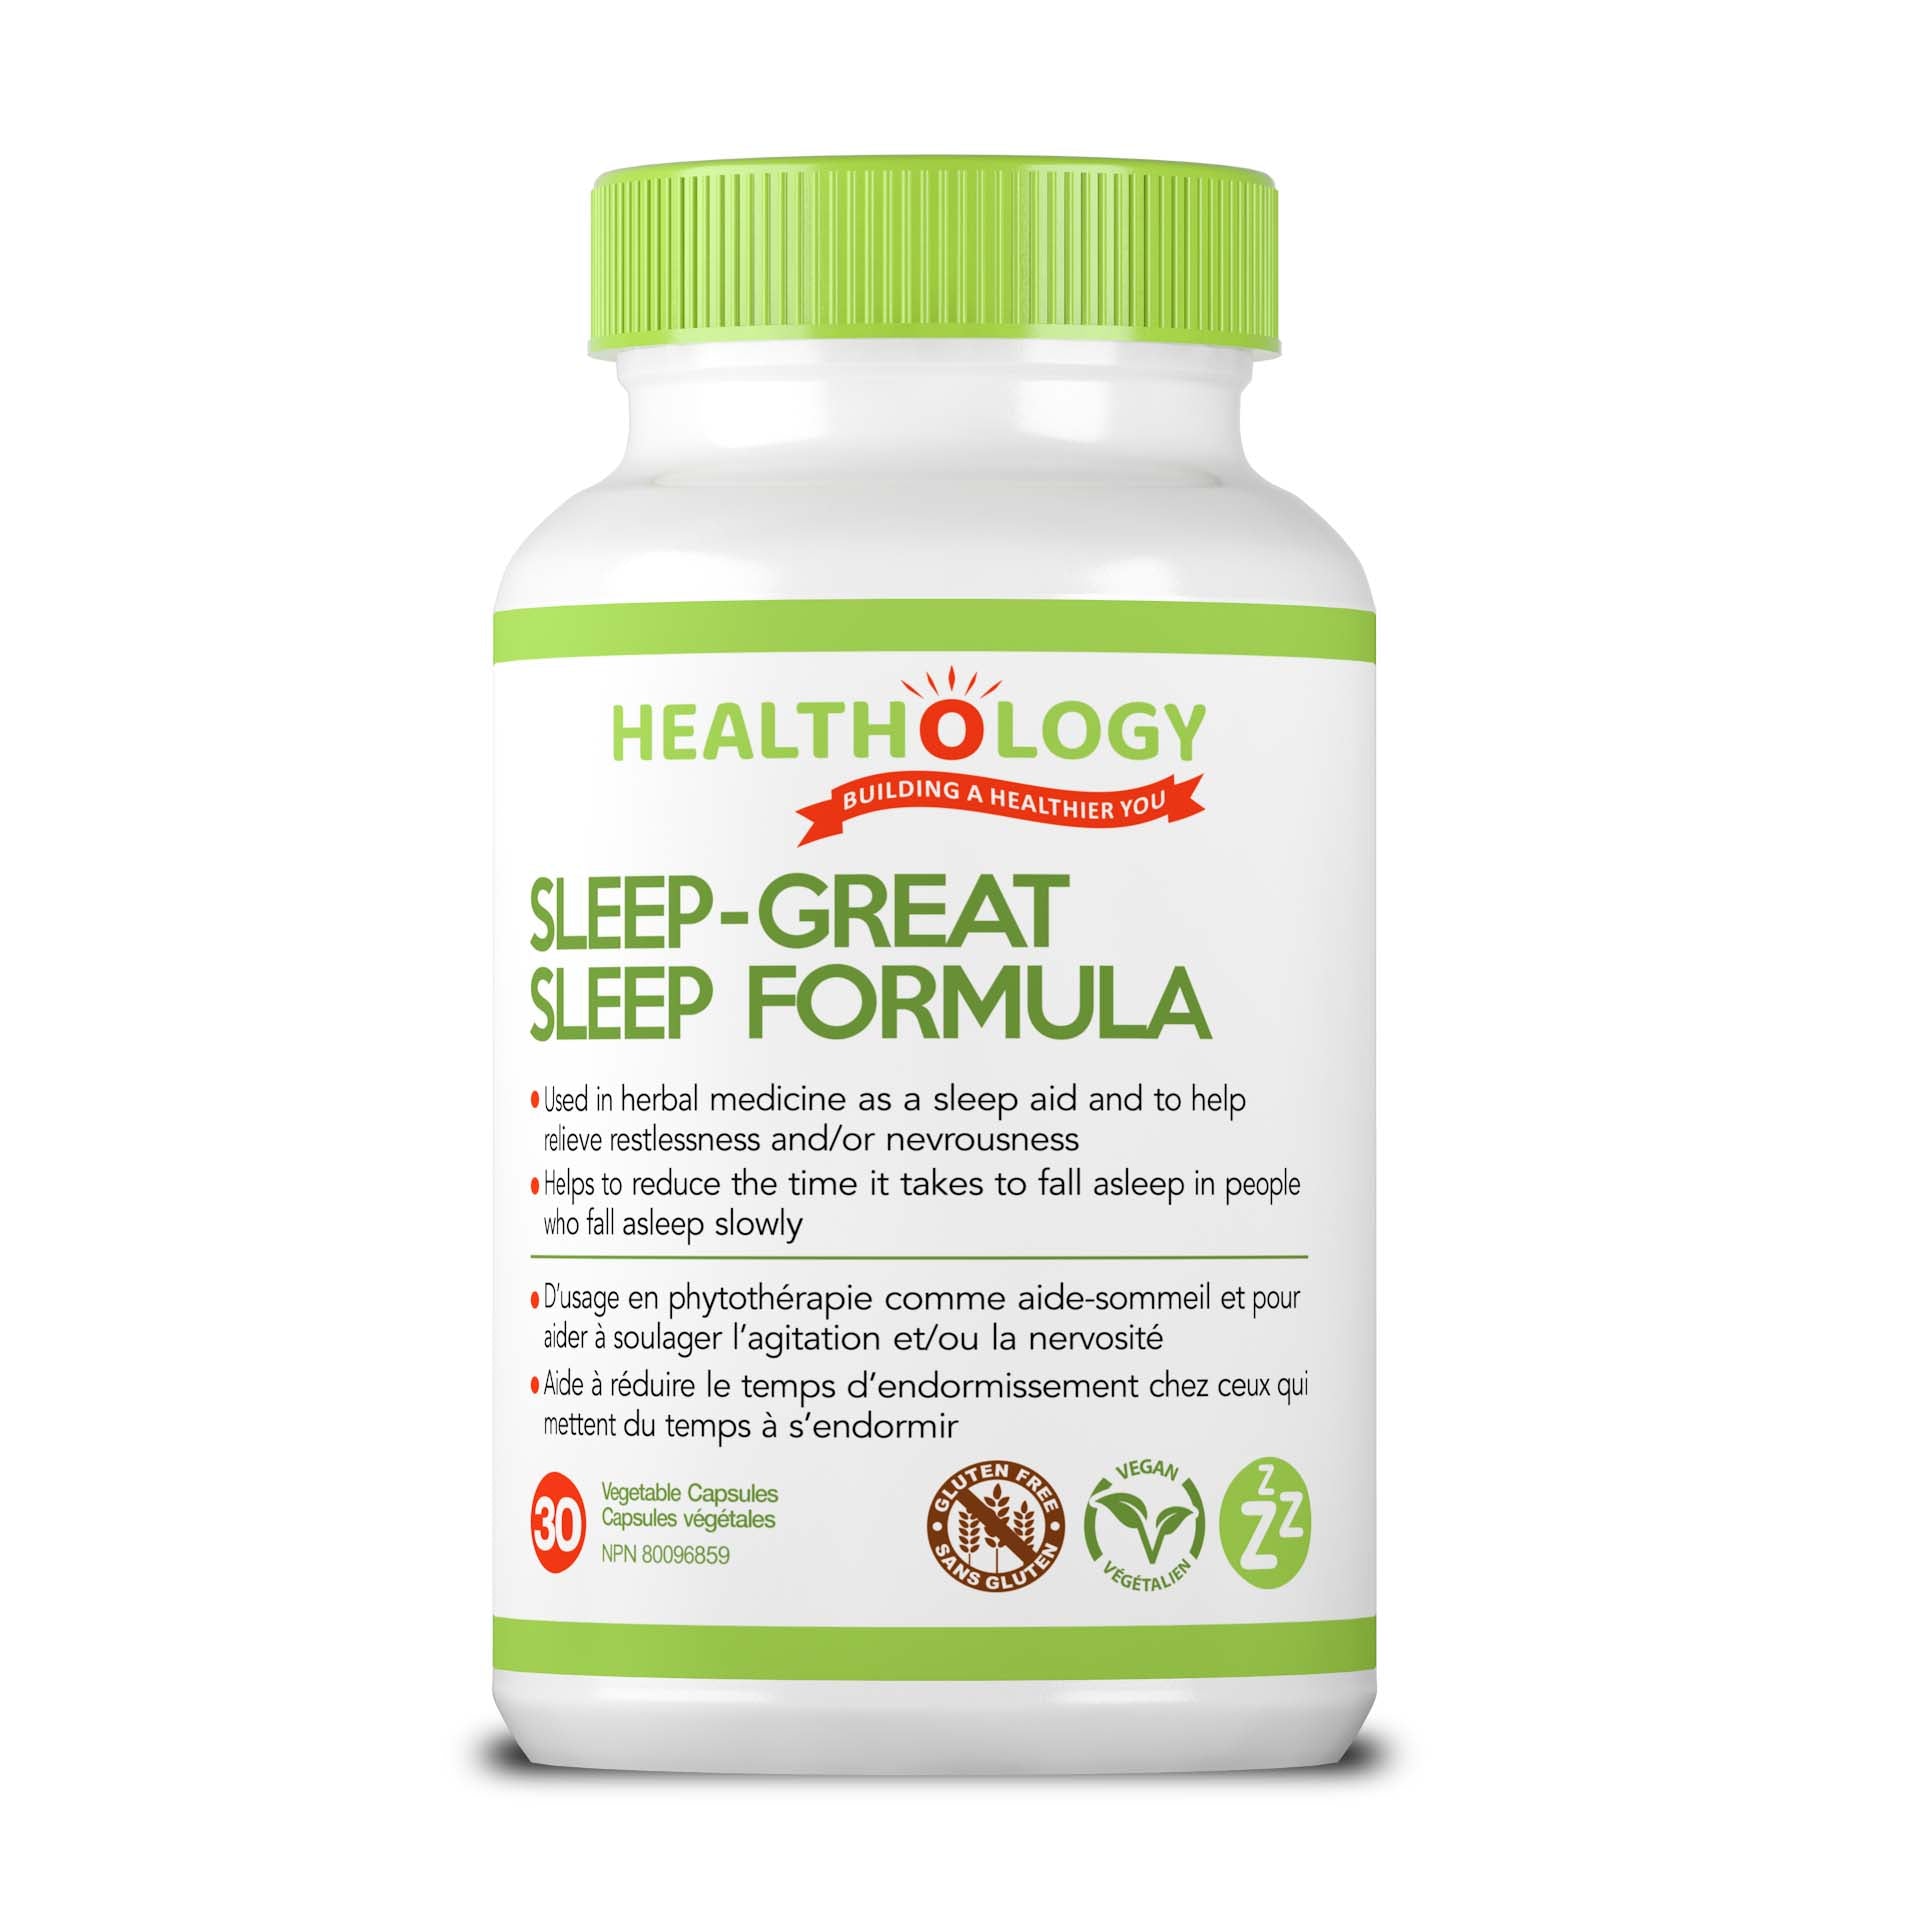 Healthology Sleep-Great Formula (30 vcaps) - Lifestyle Markets